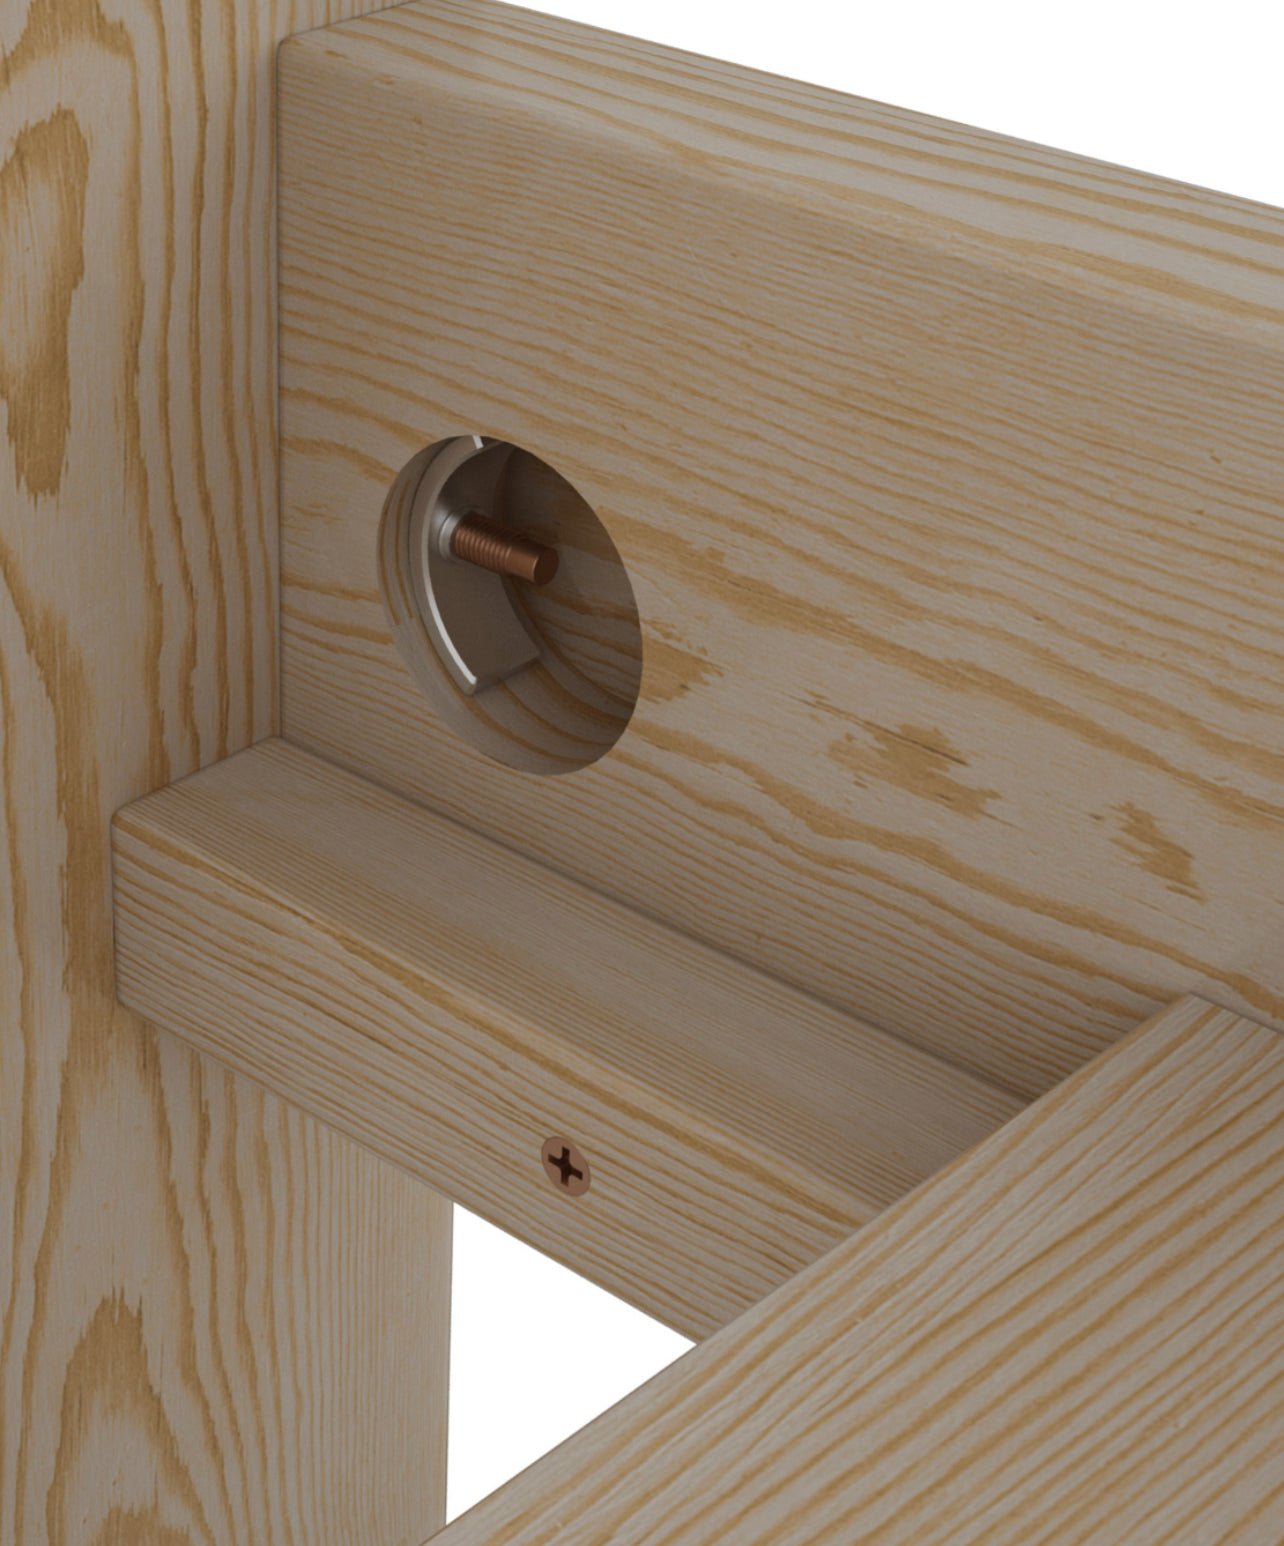 Wooden-bed-frame-solid